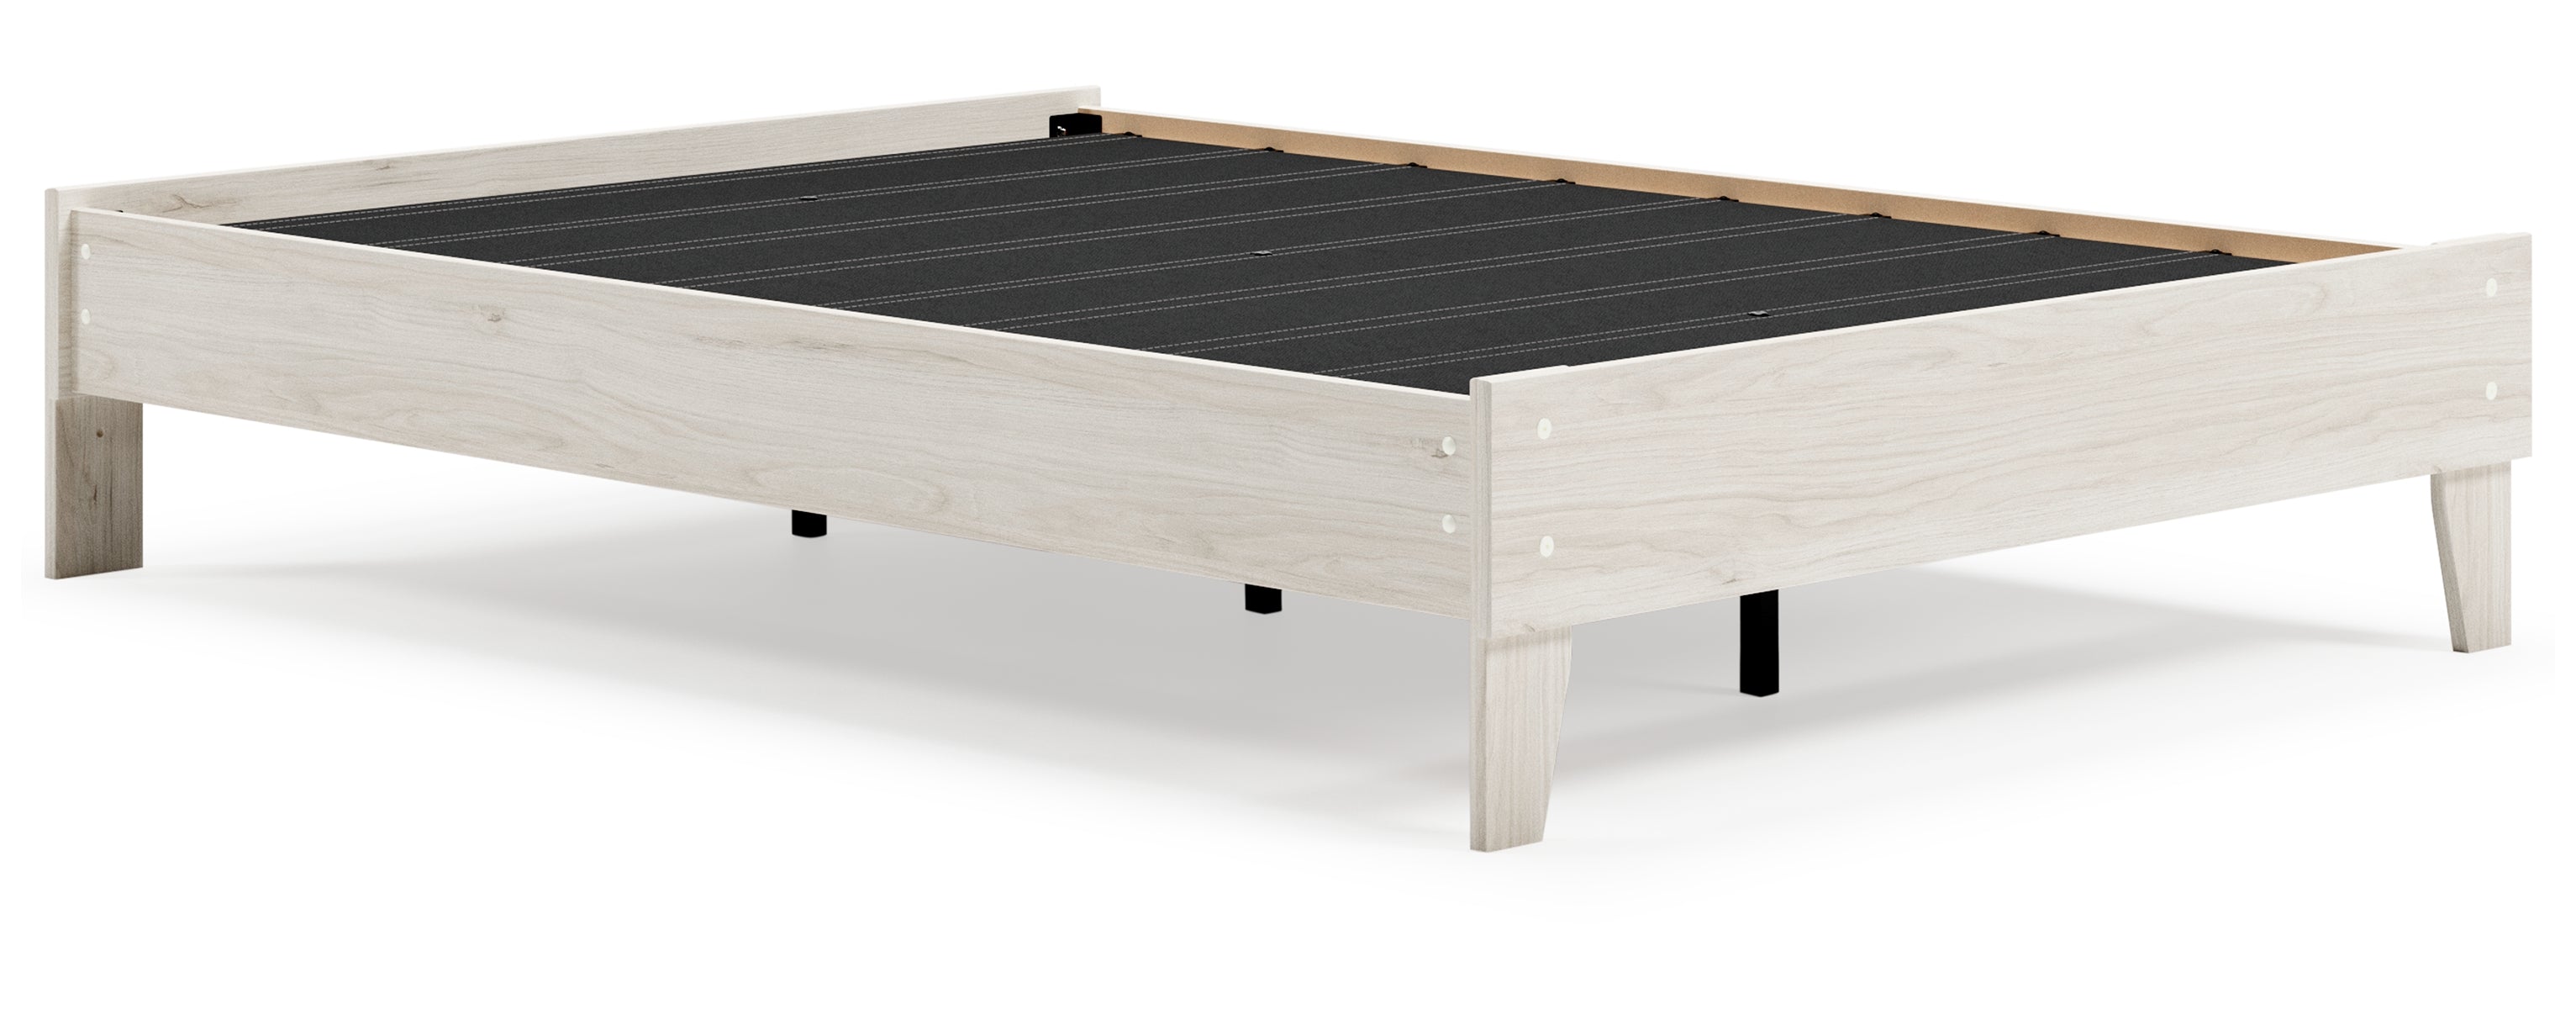 Socalle Full Platform Bed